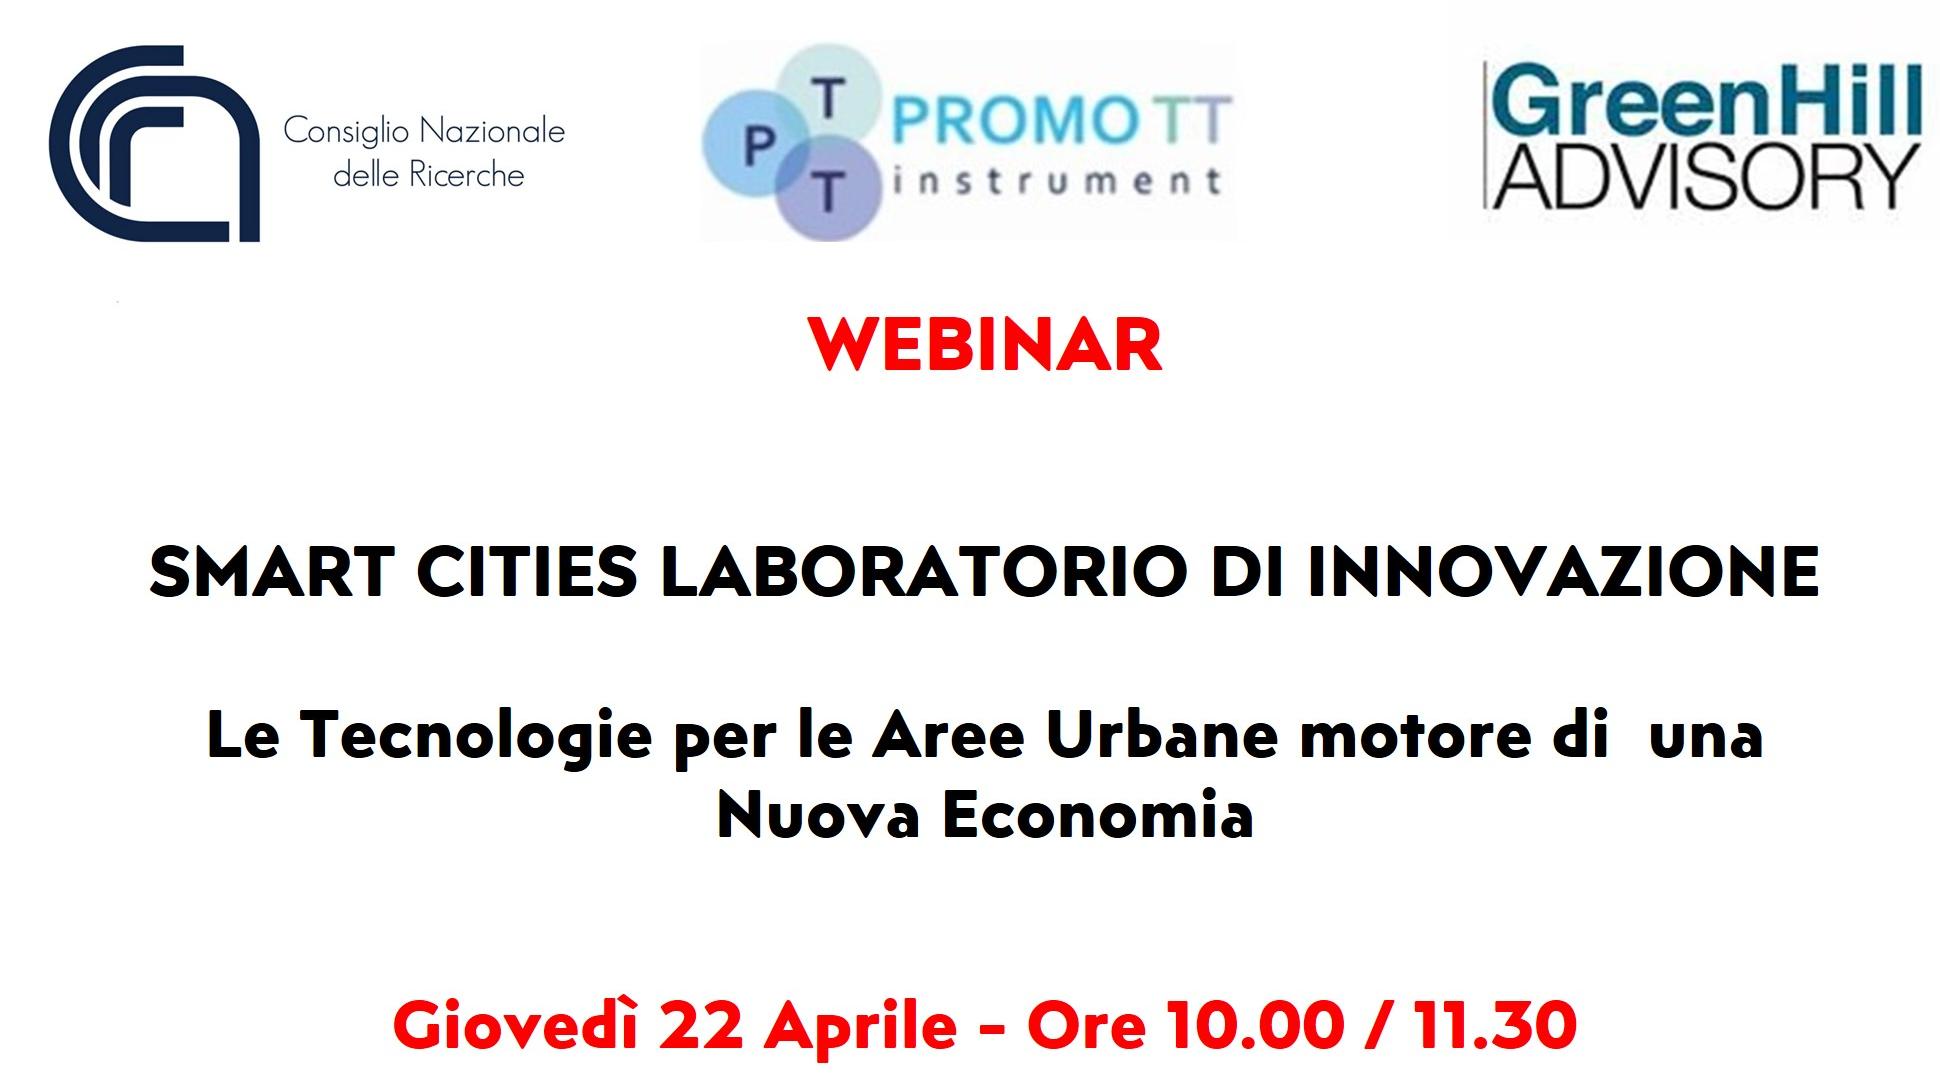 Webinar "Smart cities laboratorio di innovazione - Le tecnologie per le Aree Urbane motore di una Nuova Economia"